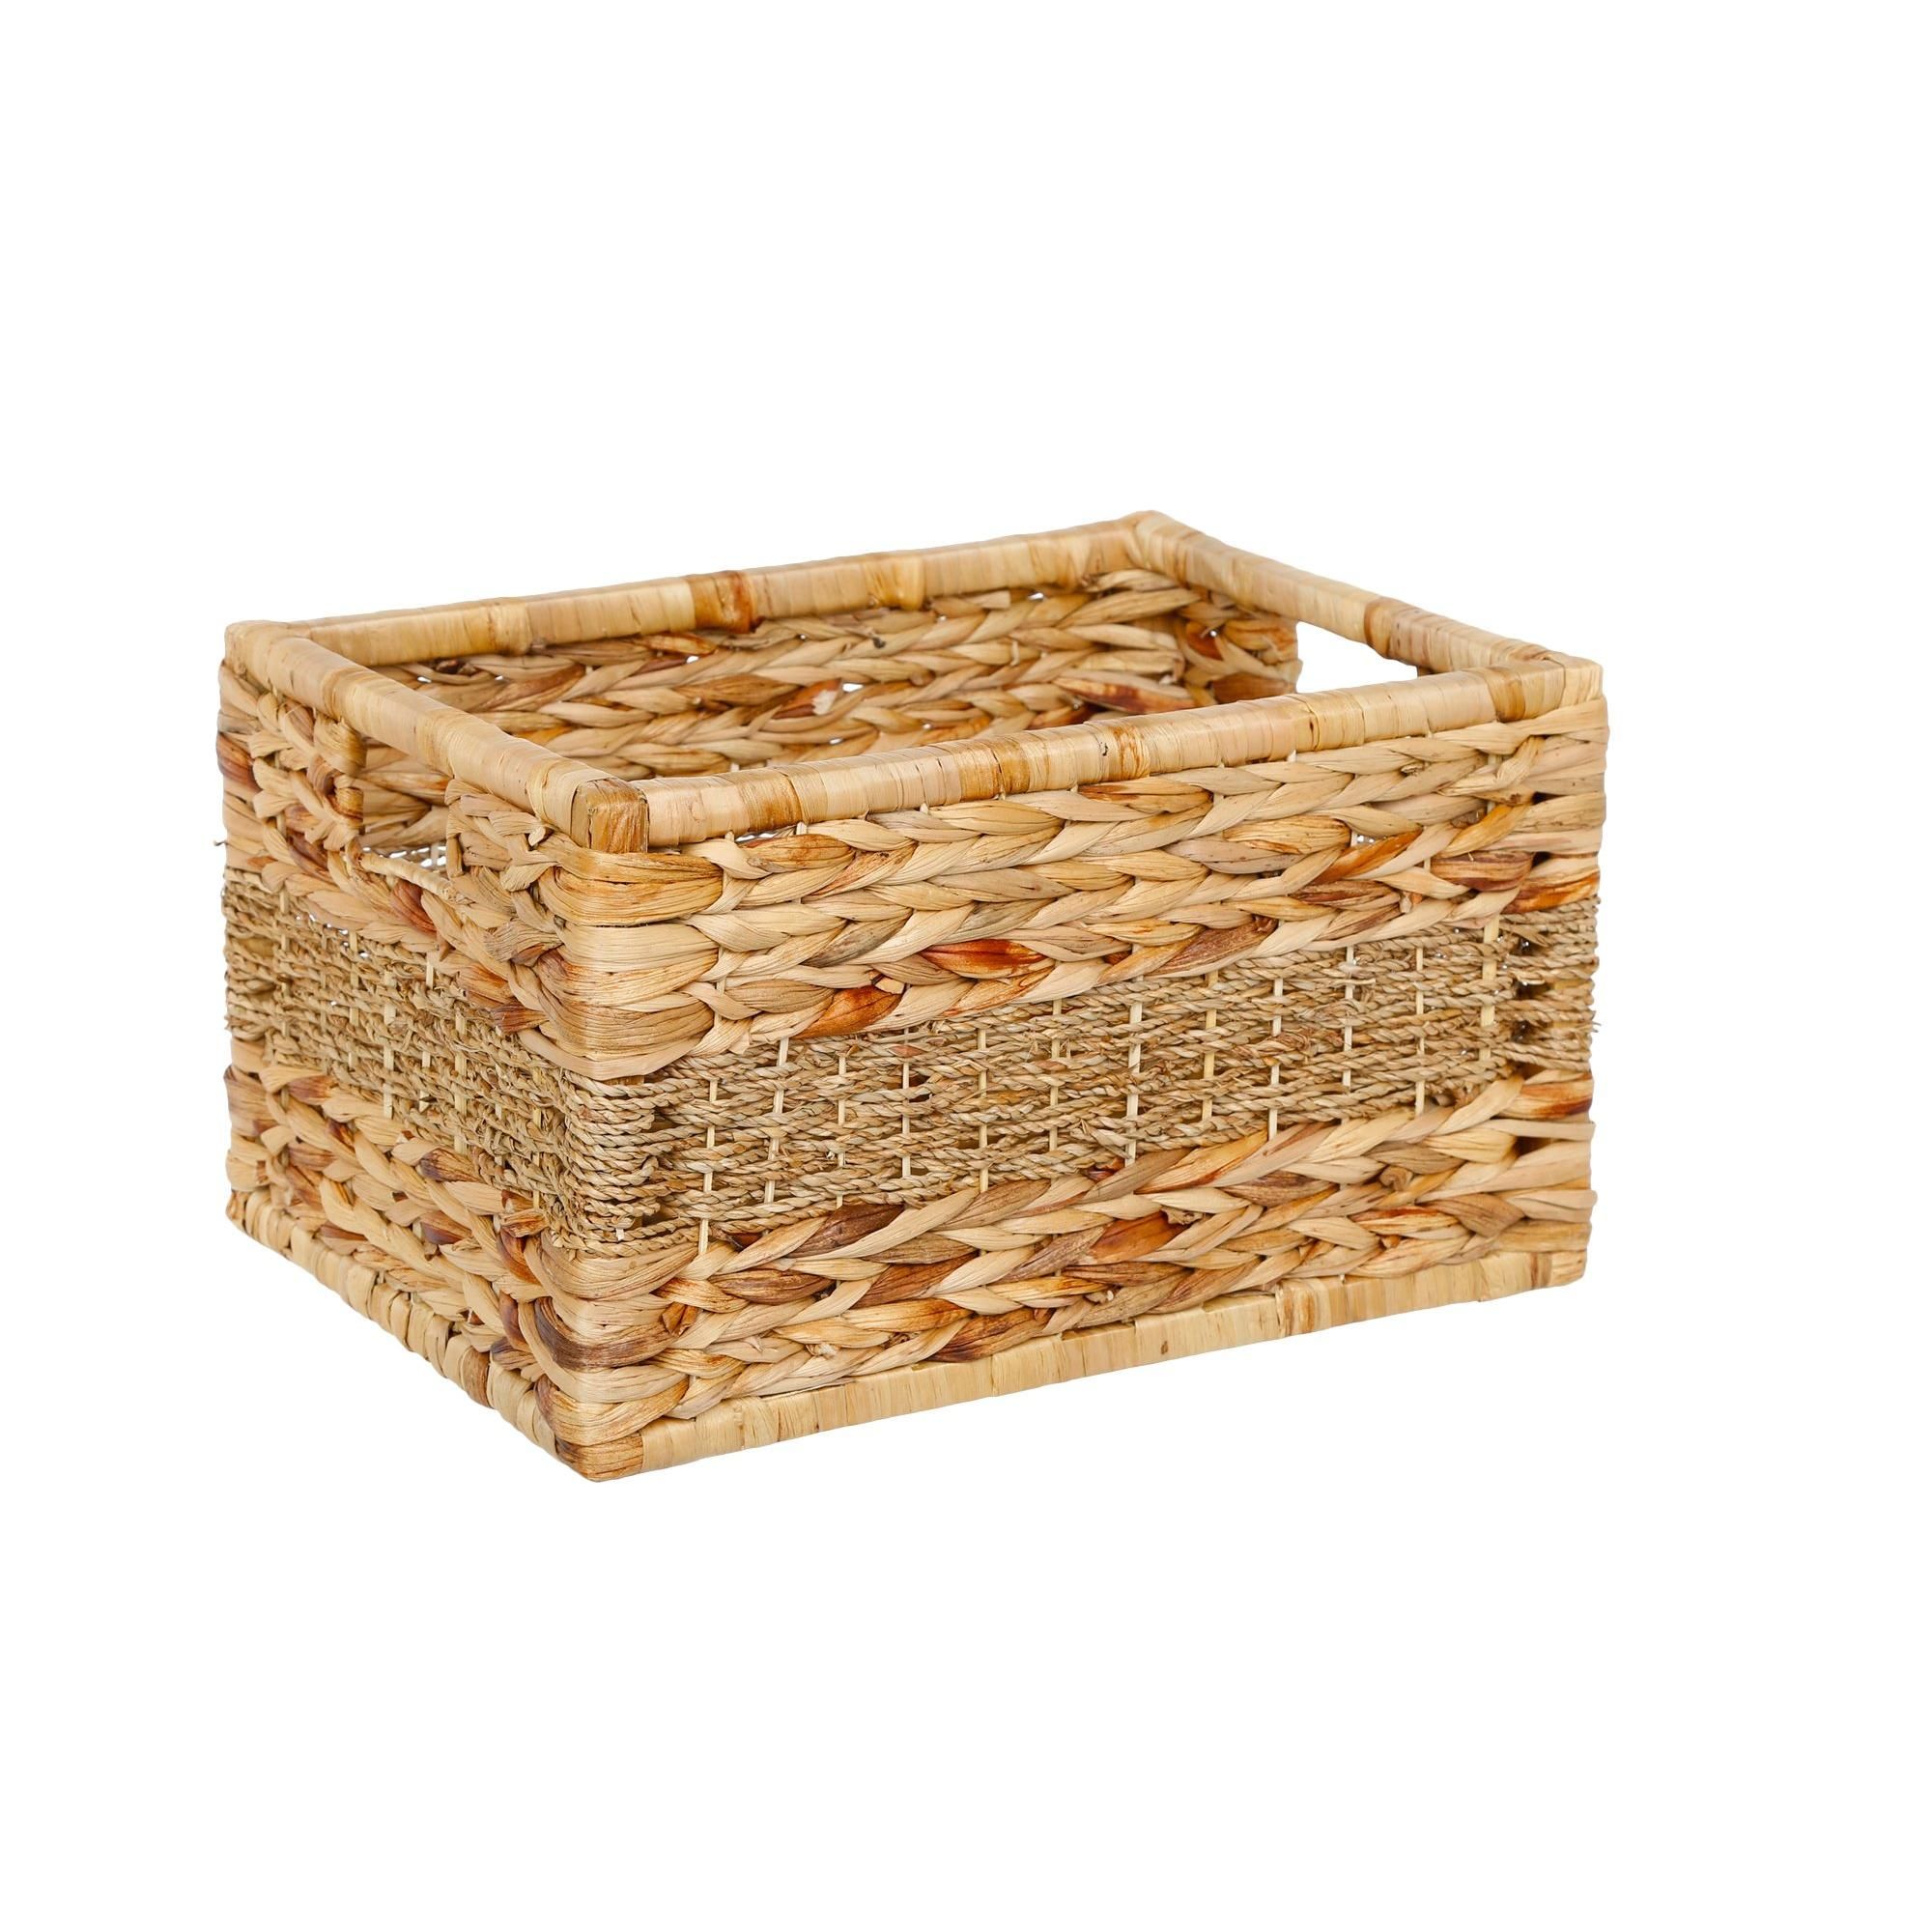 12" Woven Storage Basket - Natural-Natural-4078160441415   | Burkes Outlet | bealls